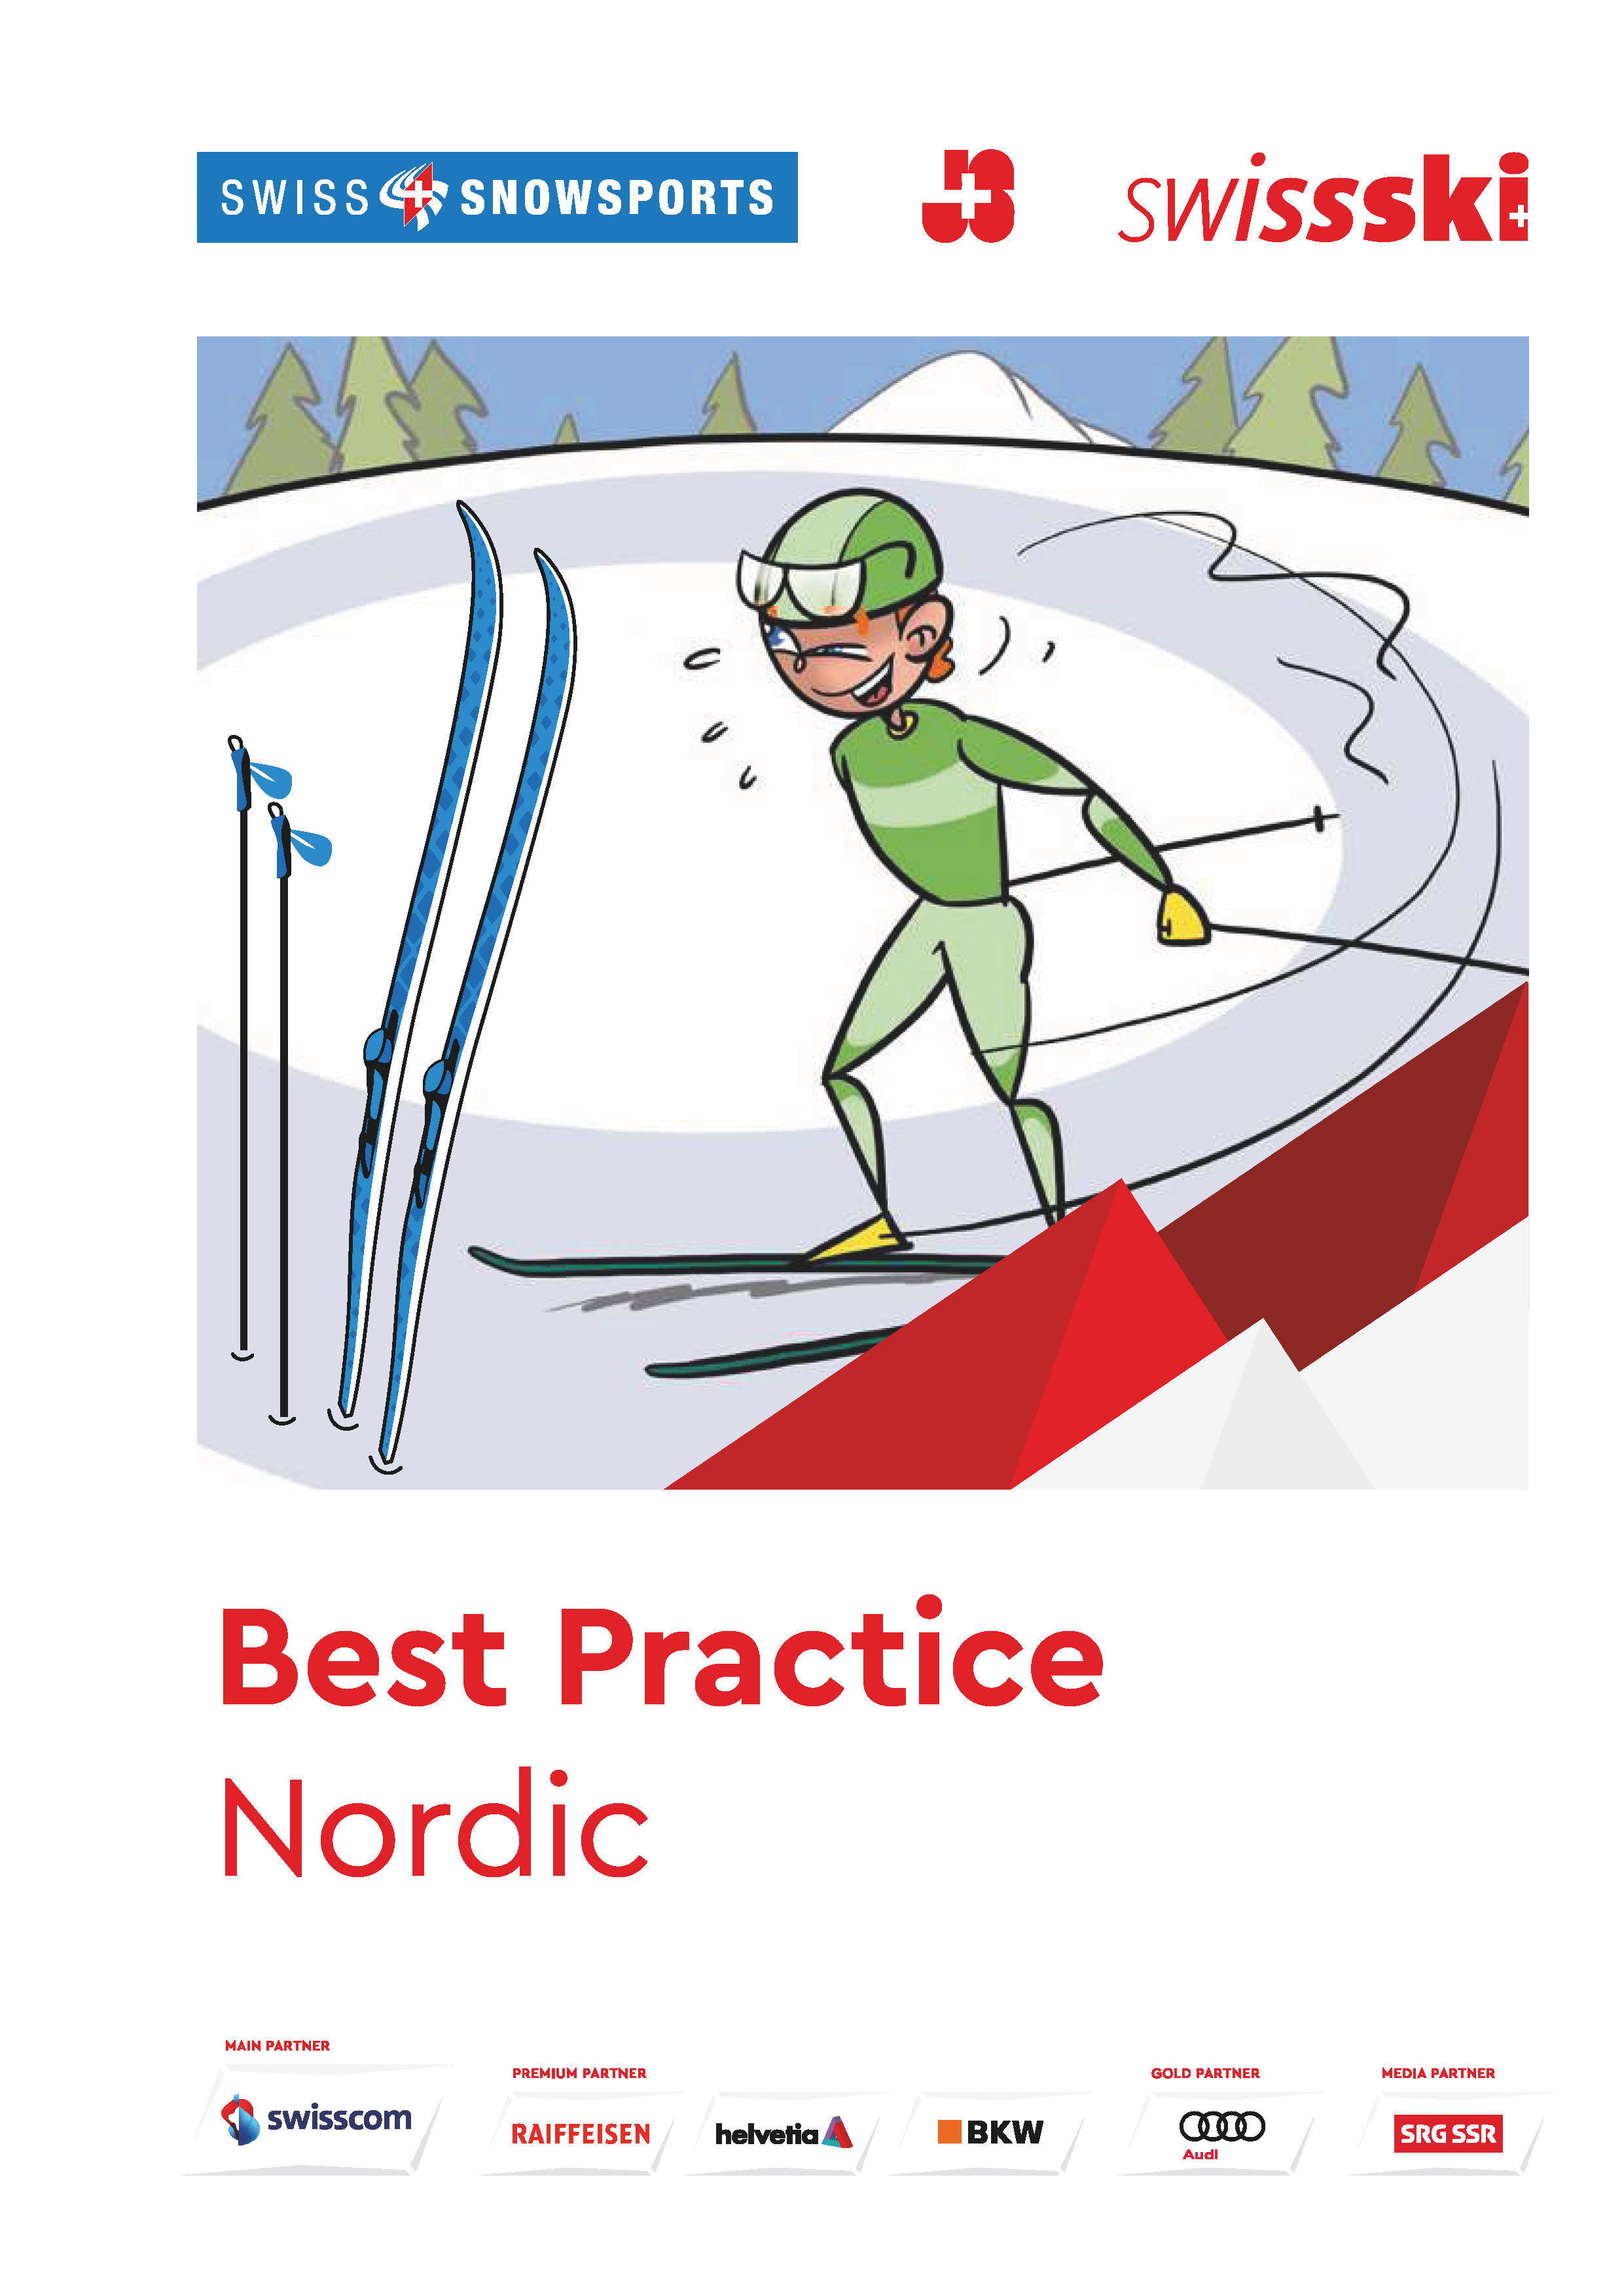 Best Practice: Nordic